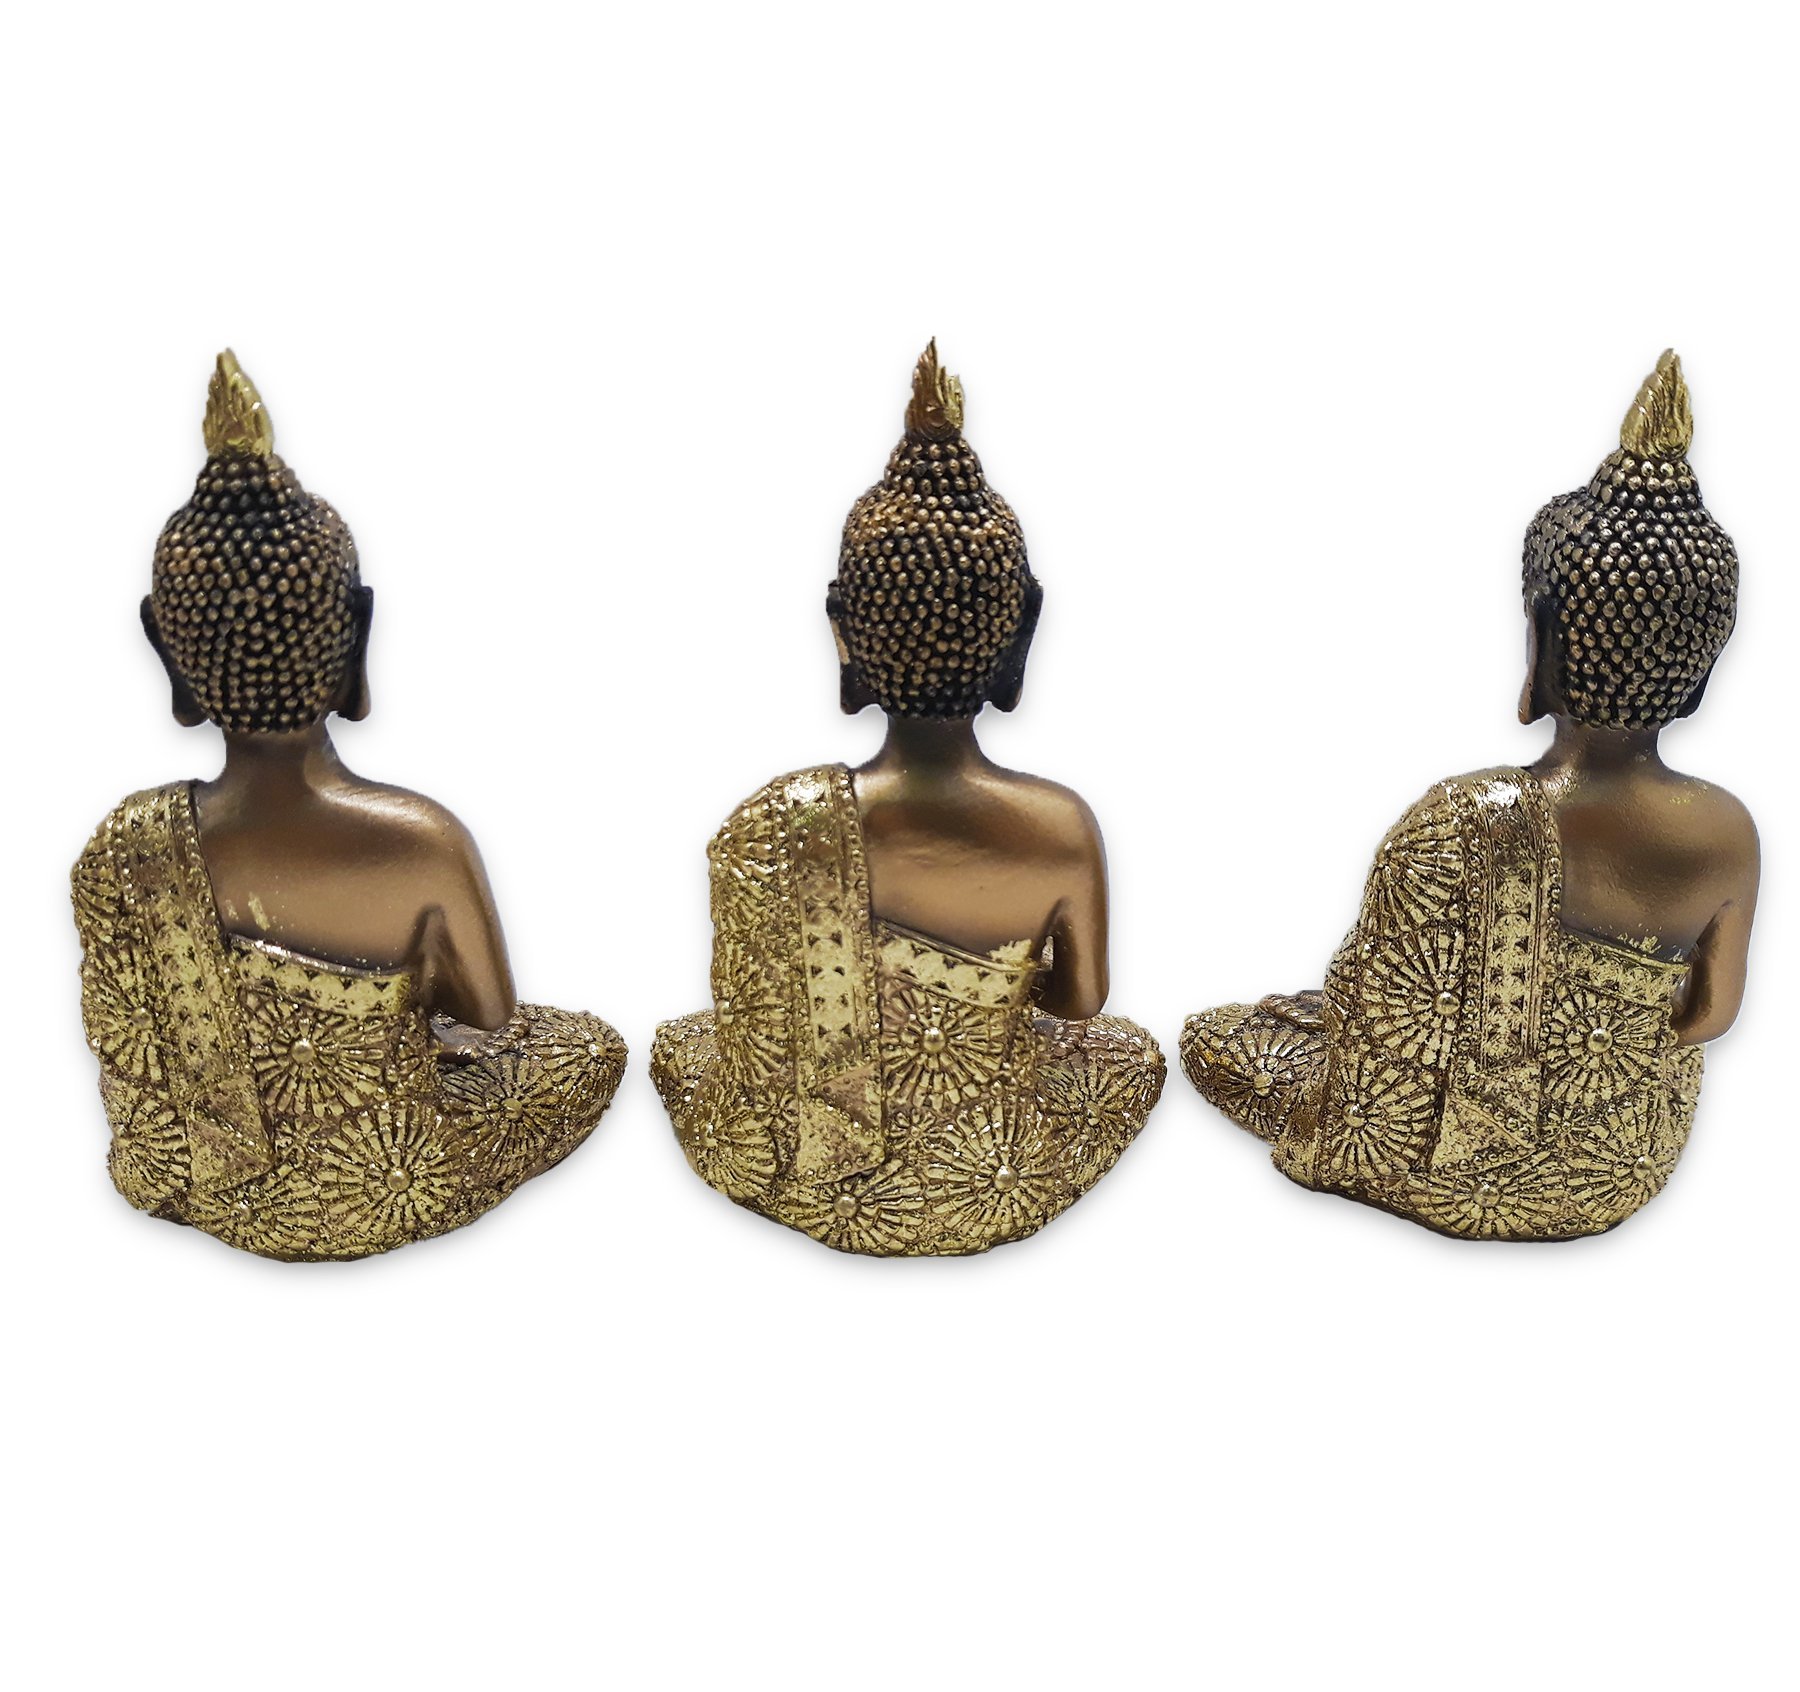 Trio de Buda Tailandês Yoga Buda Cobre Brilhante com Bandeja - 7